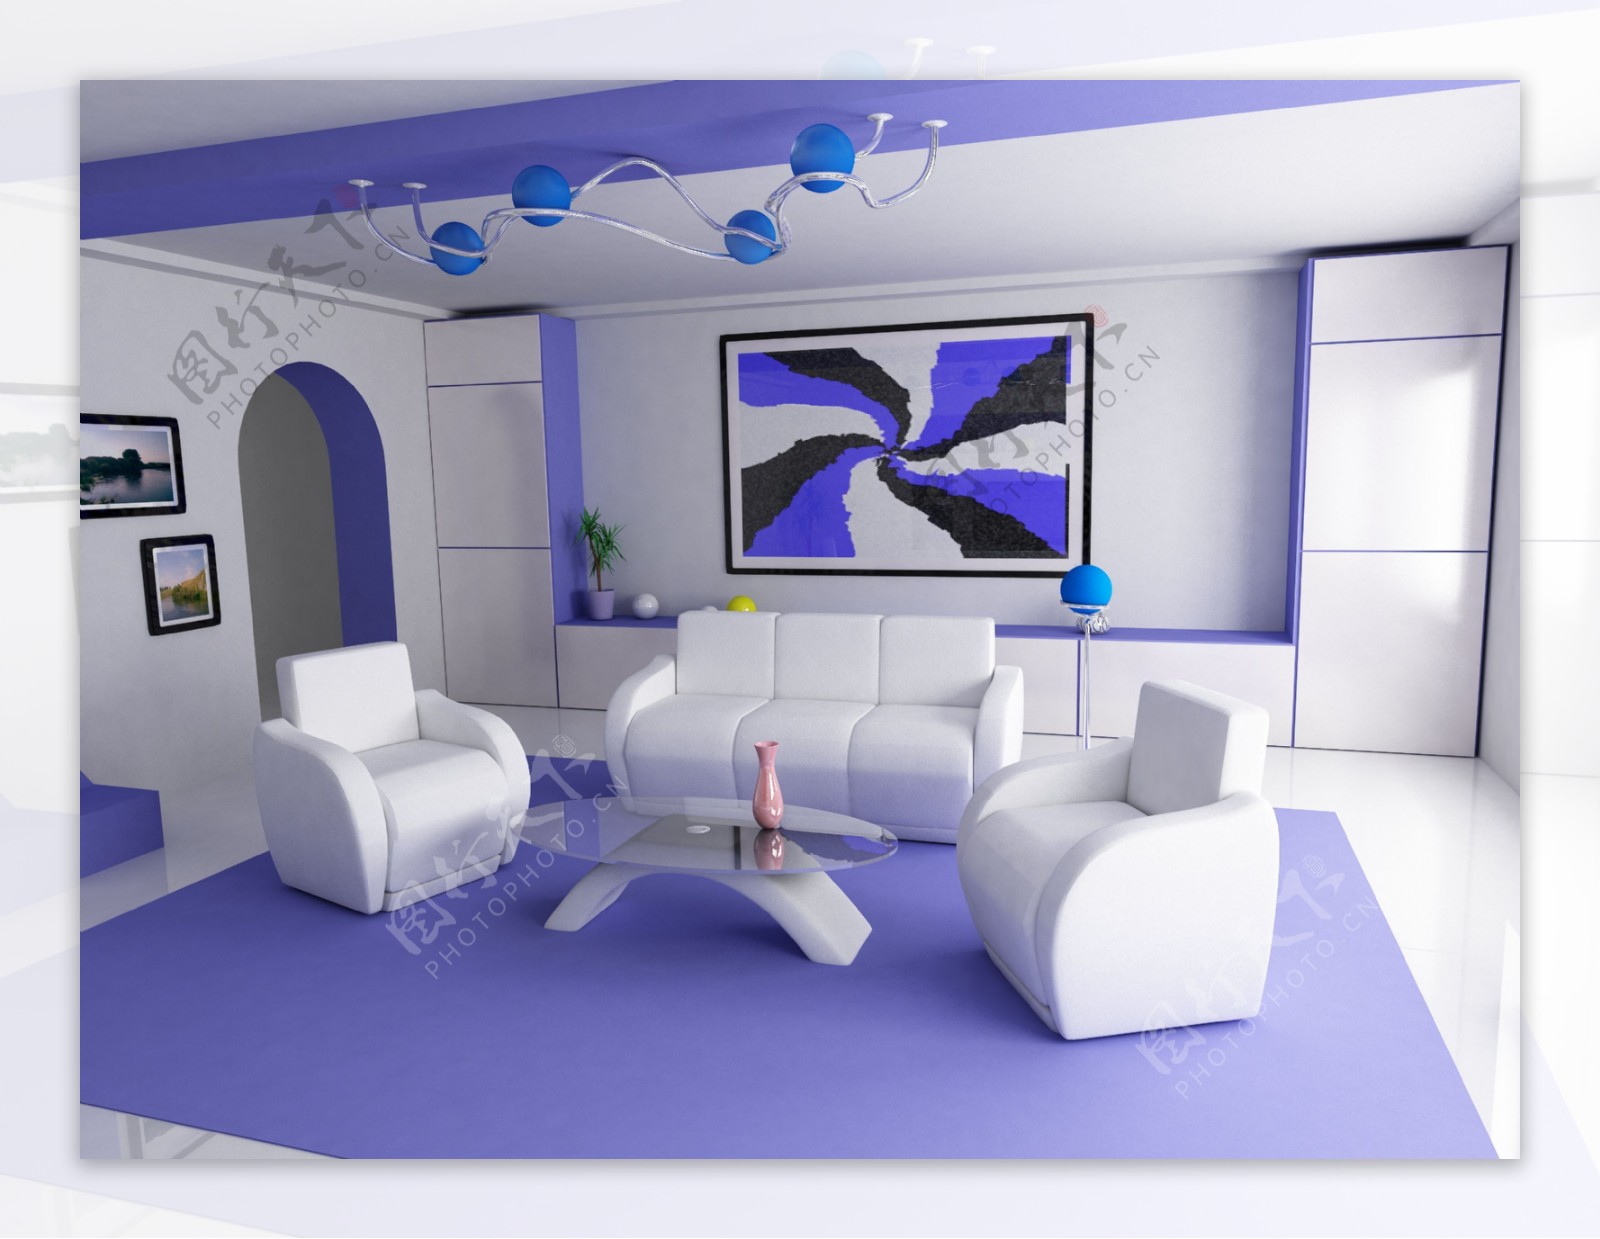 25W打造90㎡莫兰迪紫色轻奢风的家_太平洋家居网整屋案例